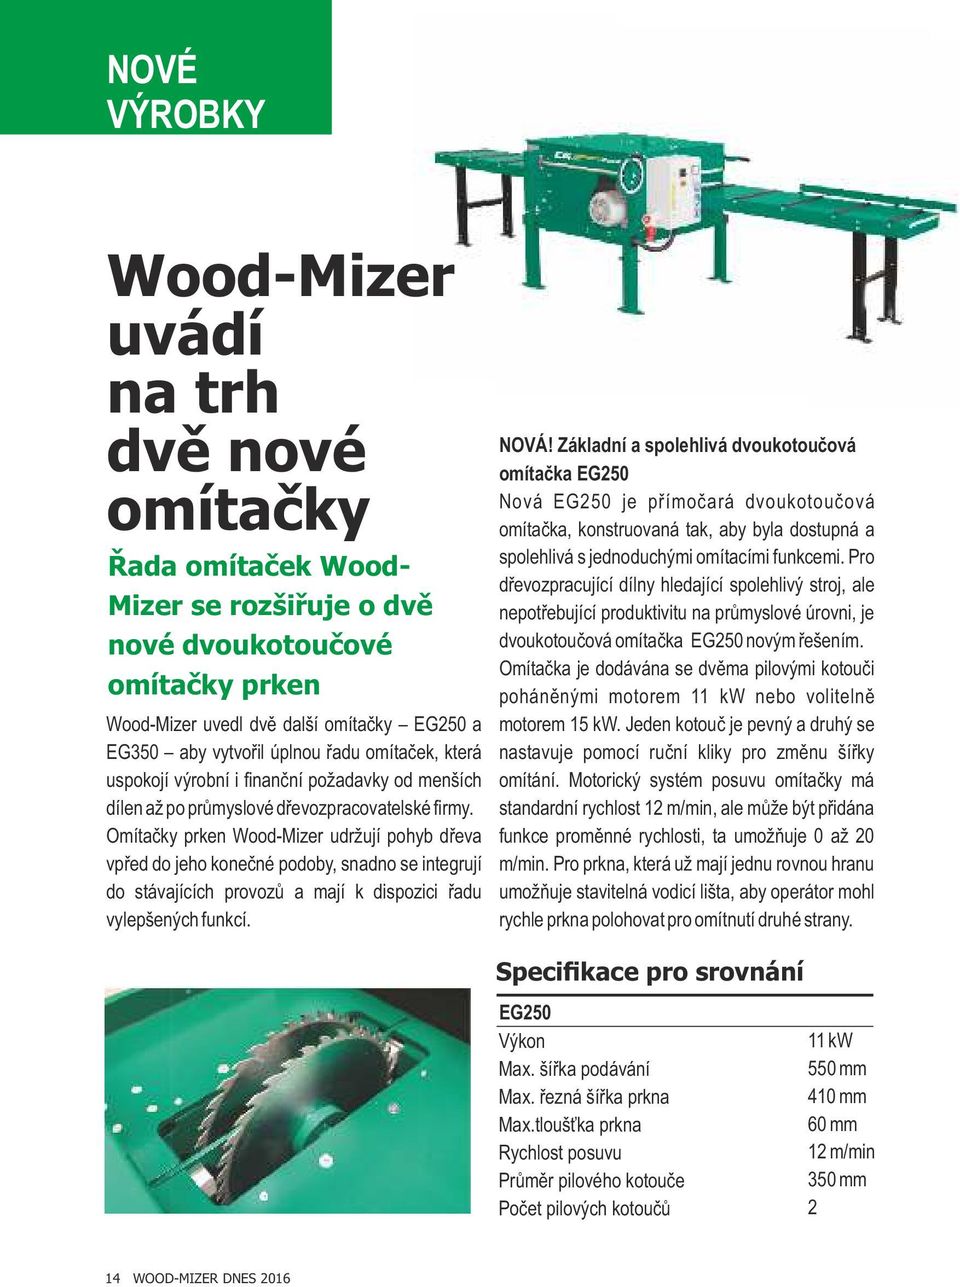 Omítačky prken Wood-Mizer udržují pohyb dřeva vpřed do jeho konečné podoby, snadno se integrují do stávajících provozů a mají k dispozici řadu vylepšených funkcí. NOVÁ!